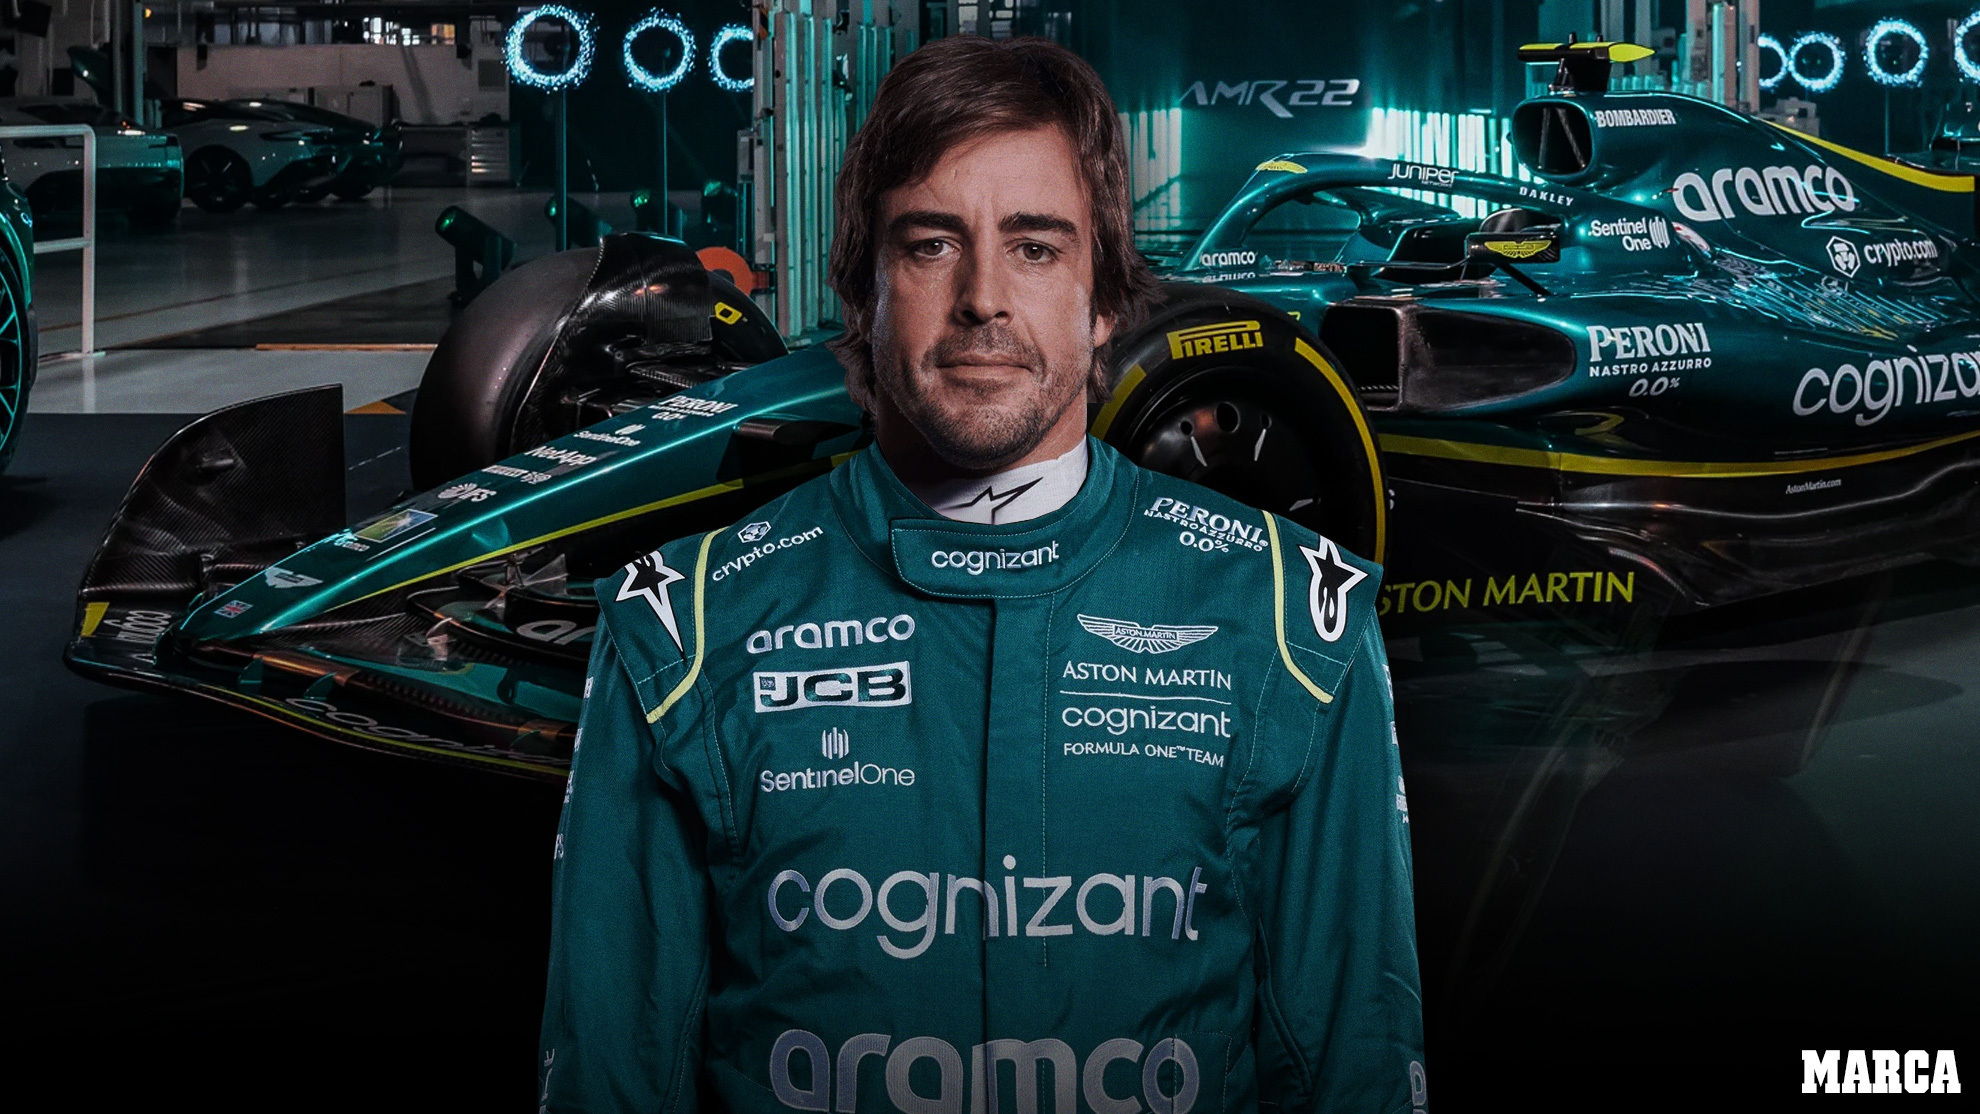 Montaje de cómo se verá a Alonso vestido de verde | MARCA